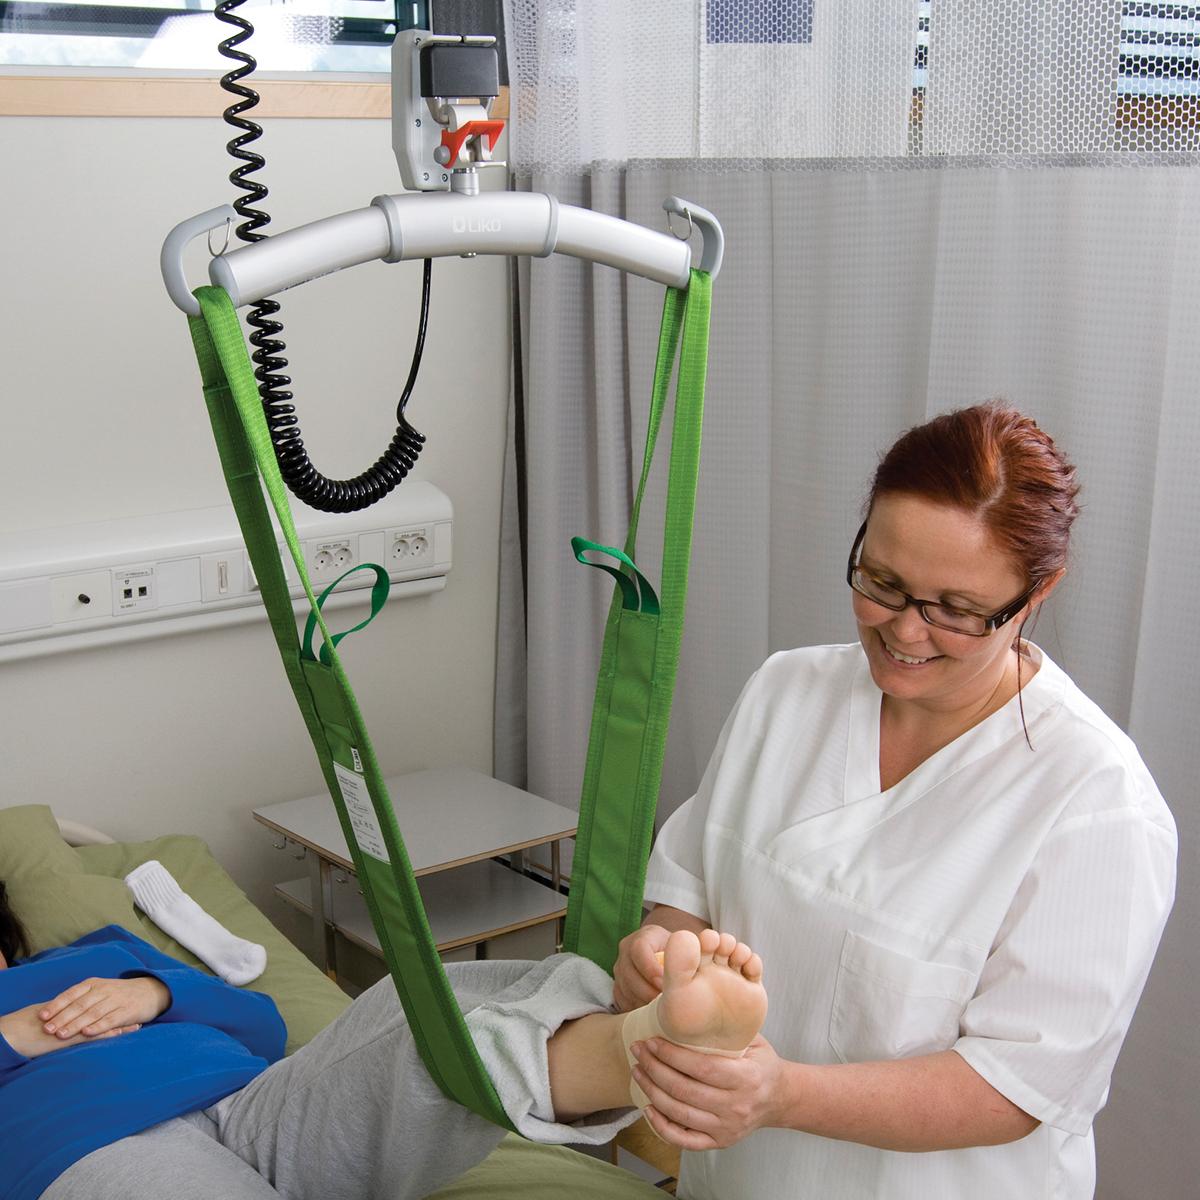 L'ausilio per il sollevamento MultiStrap™, in verde, usato sul piede sinistro di un paziente sdraiato, tenuto da un medico con gli occhiali